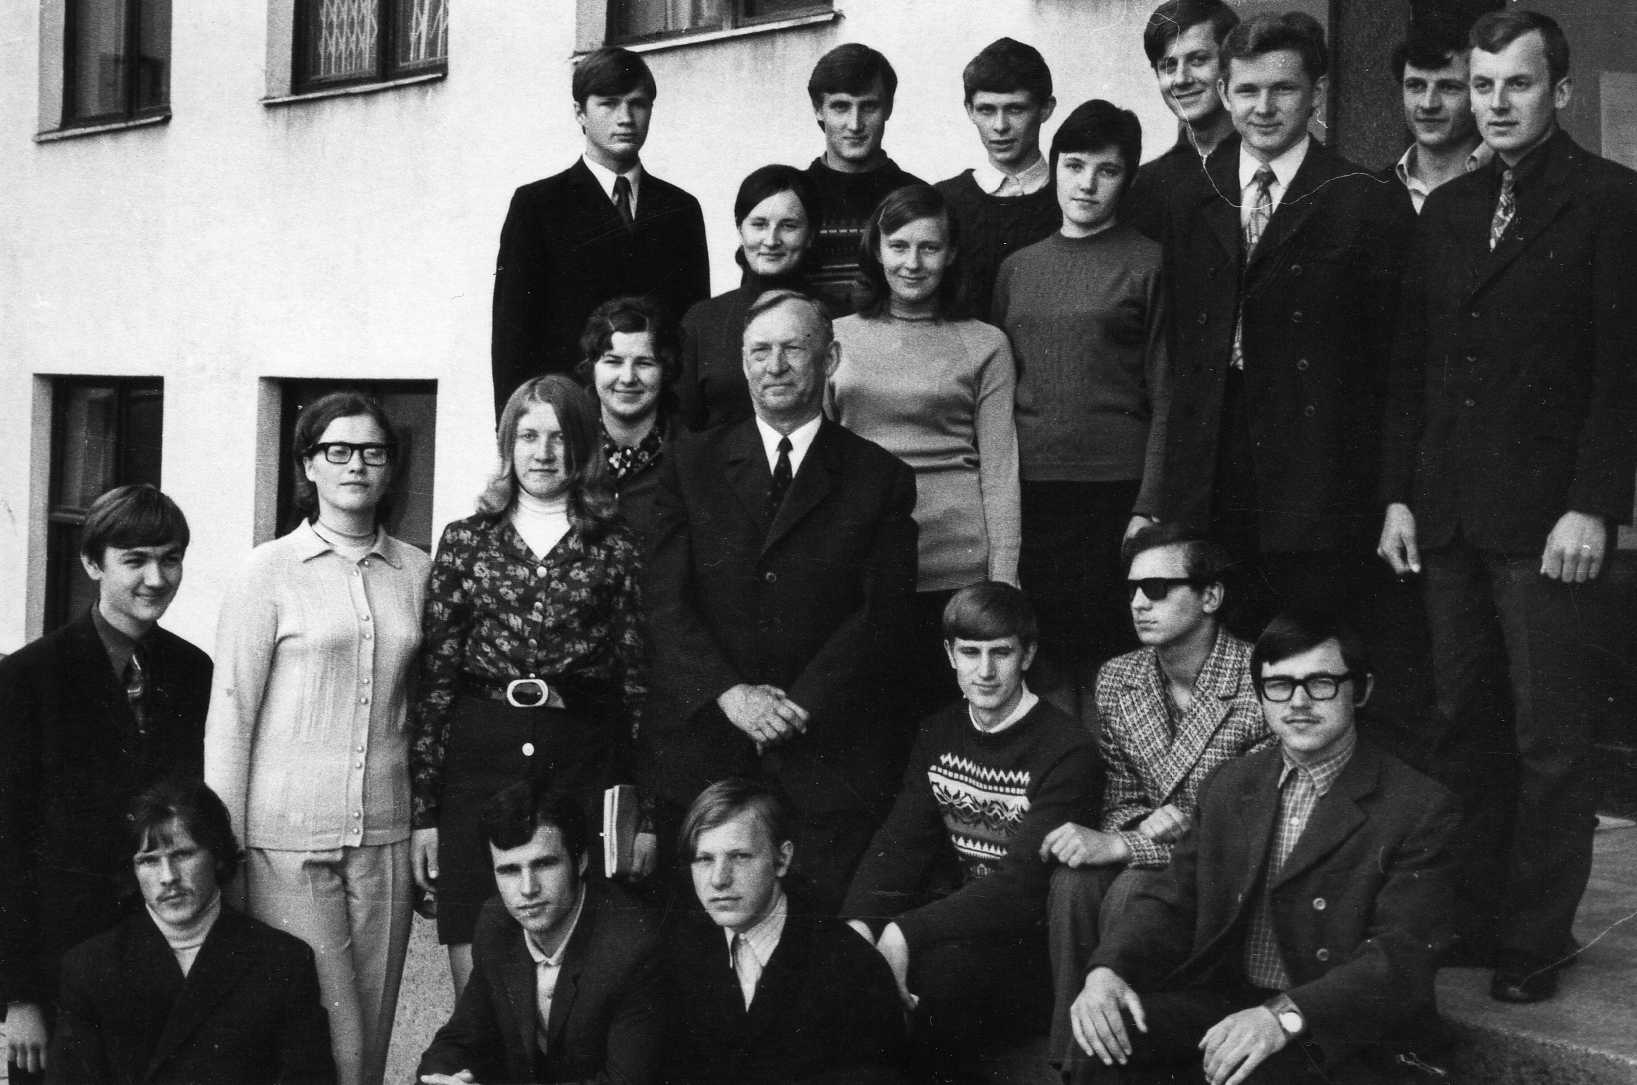 Lietuvos žemės ūkio akademijos profesorius Petras Vasinauskas (antroje eilėje ketvirtas iš kairės) su auklėjamąja grupe. 1973 m.